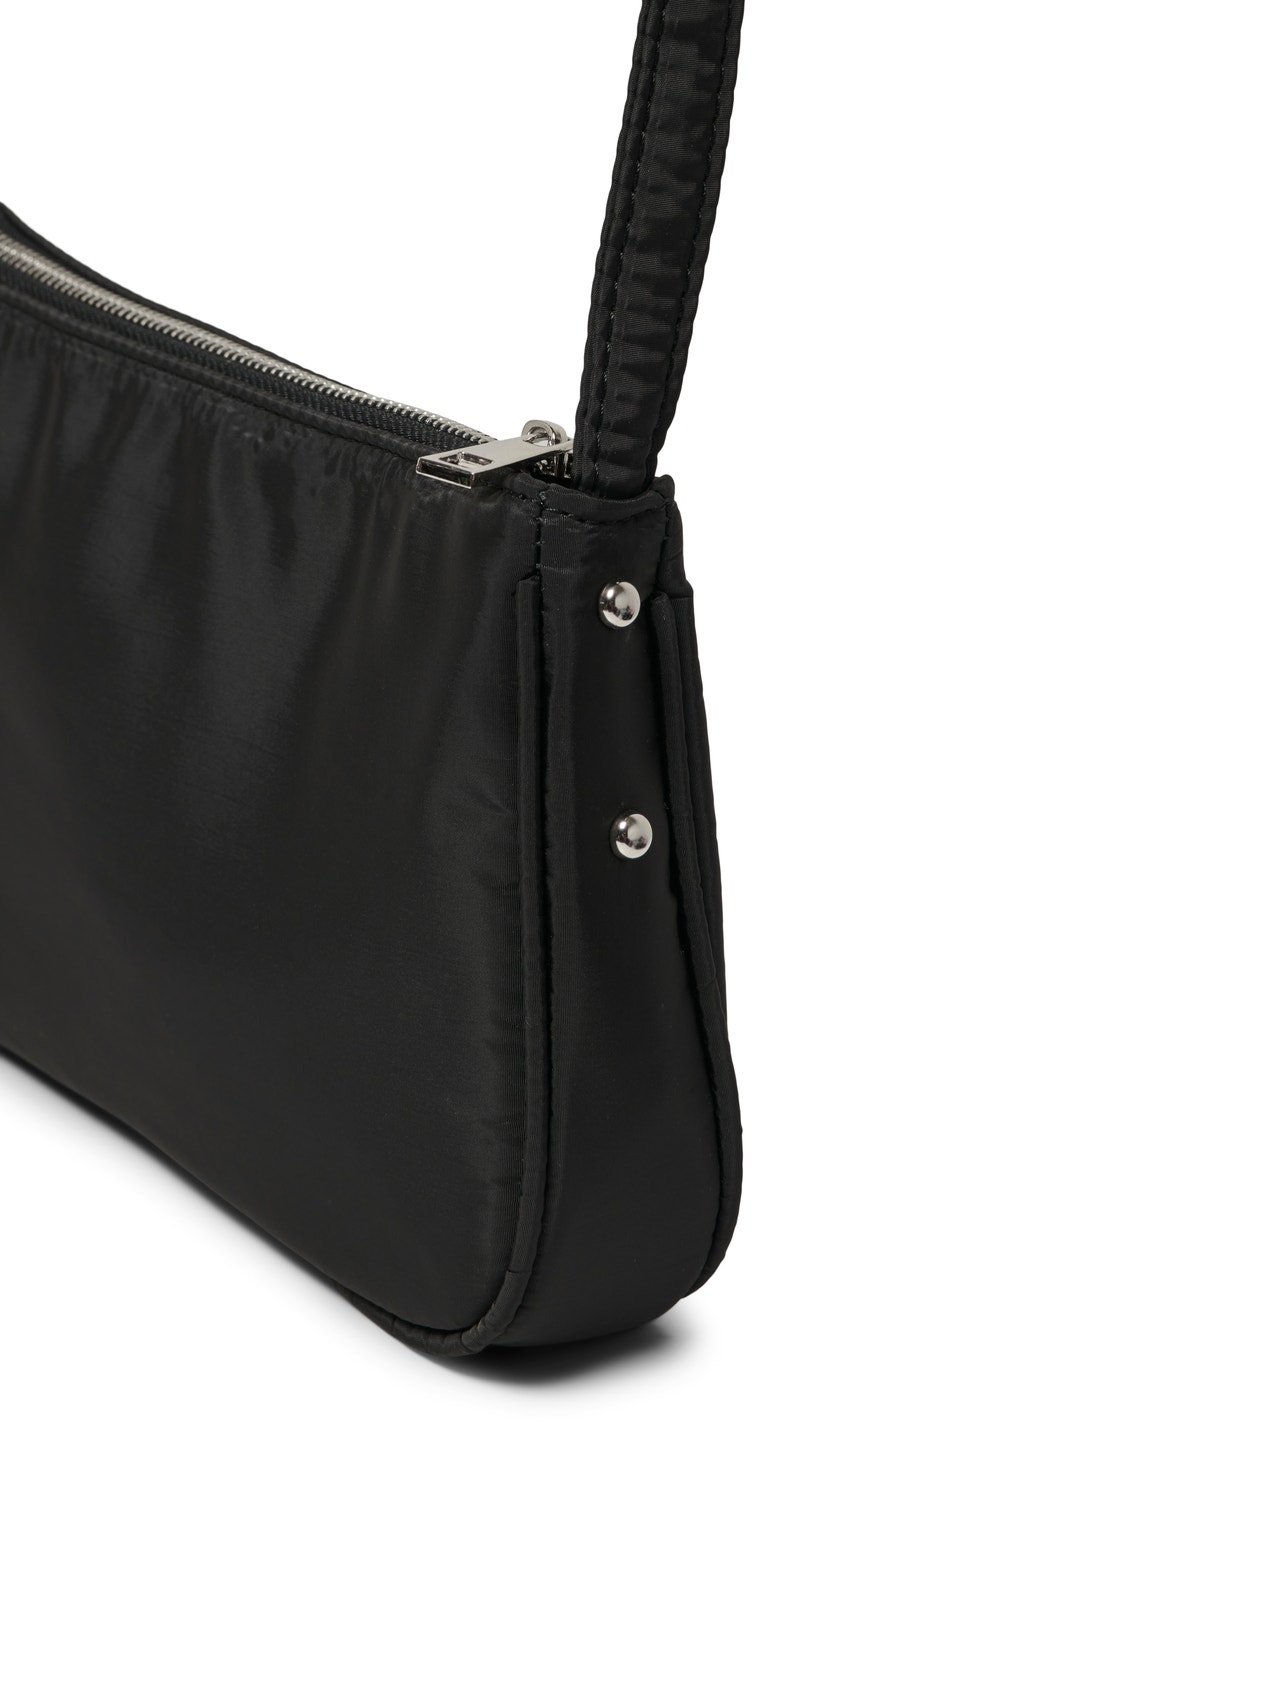 ONLY Shoulder bag -Black - 15305317